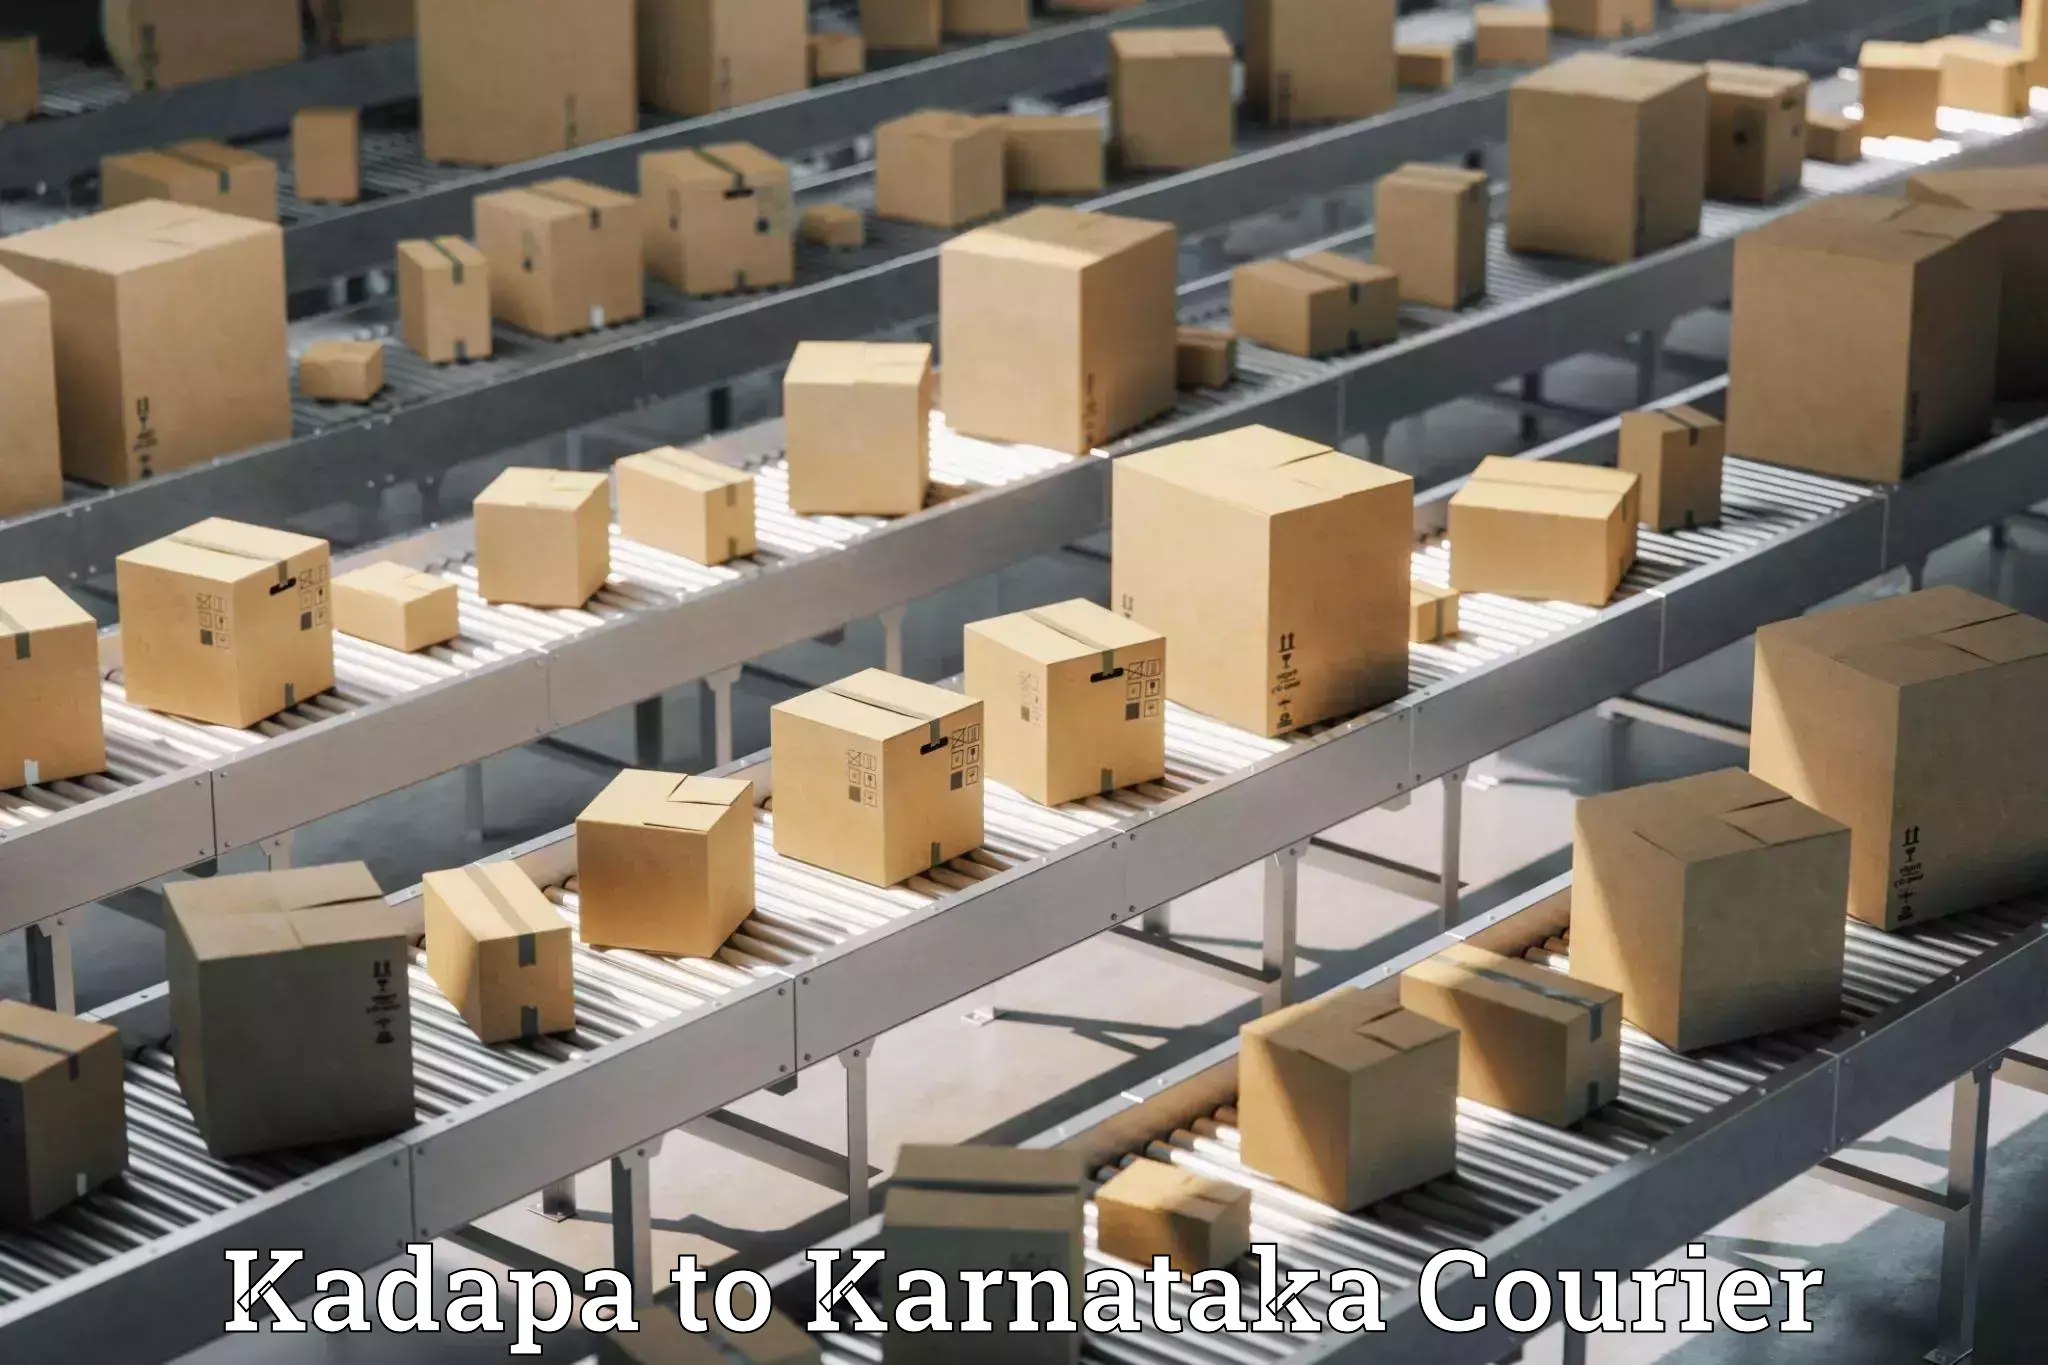 User-friendly courier app Kadapa to Belur